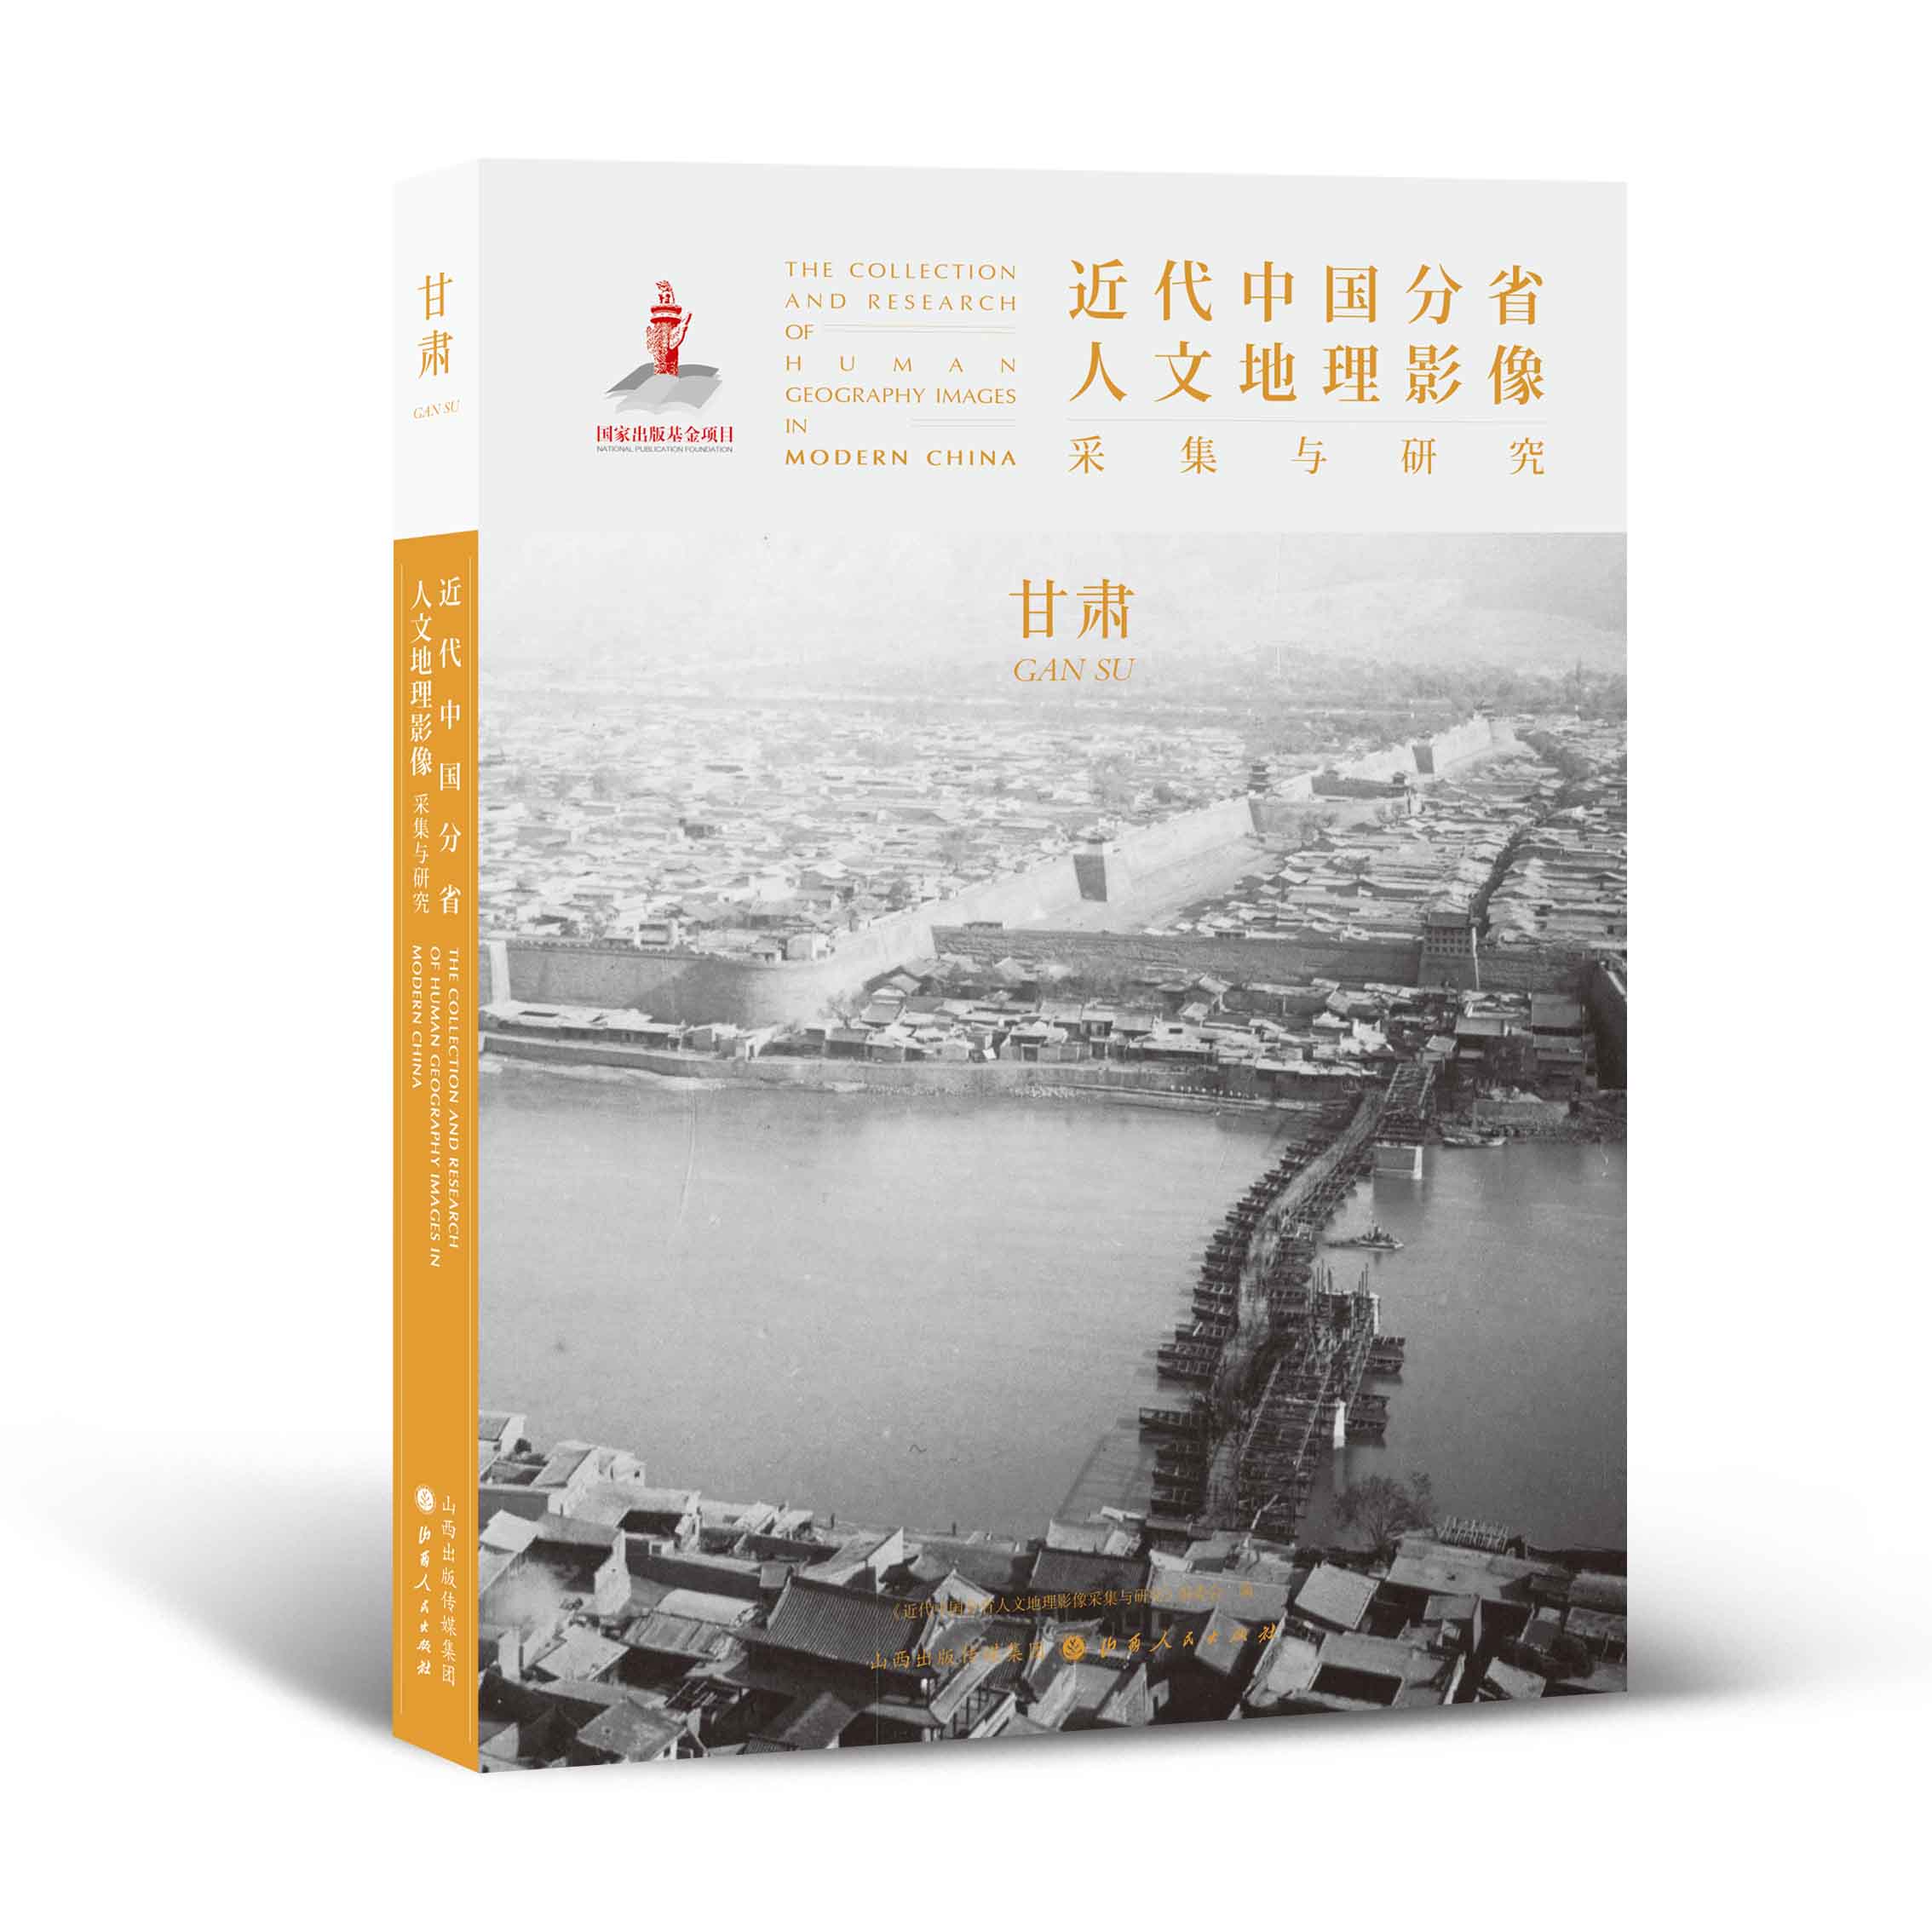 正版包邮 近代中国分省人文地理影像采集与研究 甘肃 国家出版基金项目 全球采集 用图像读懂中国近代史 近代中国的影像读本